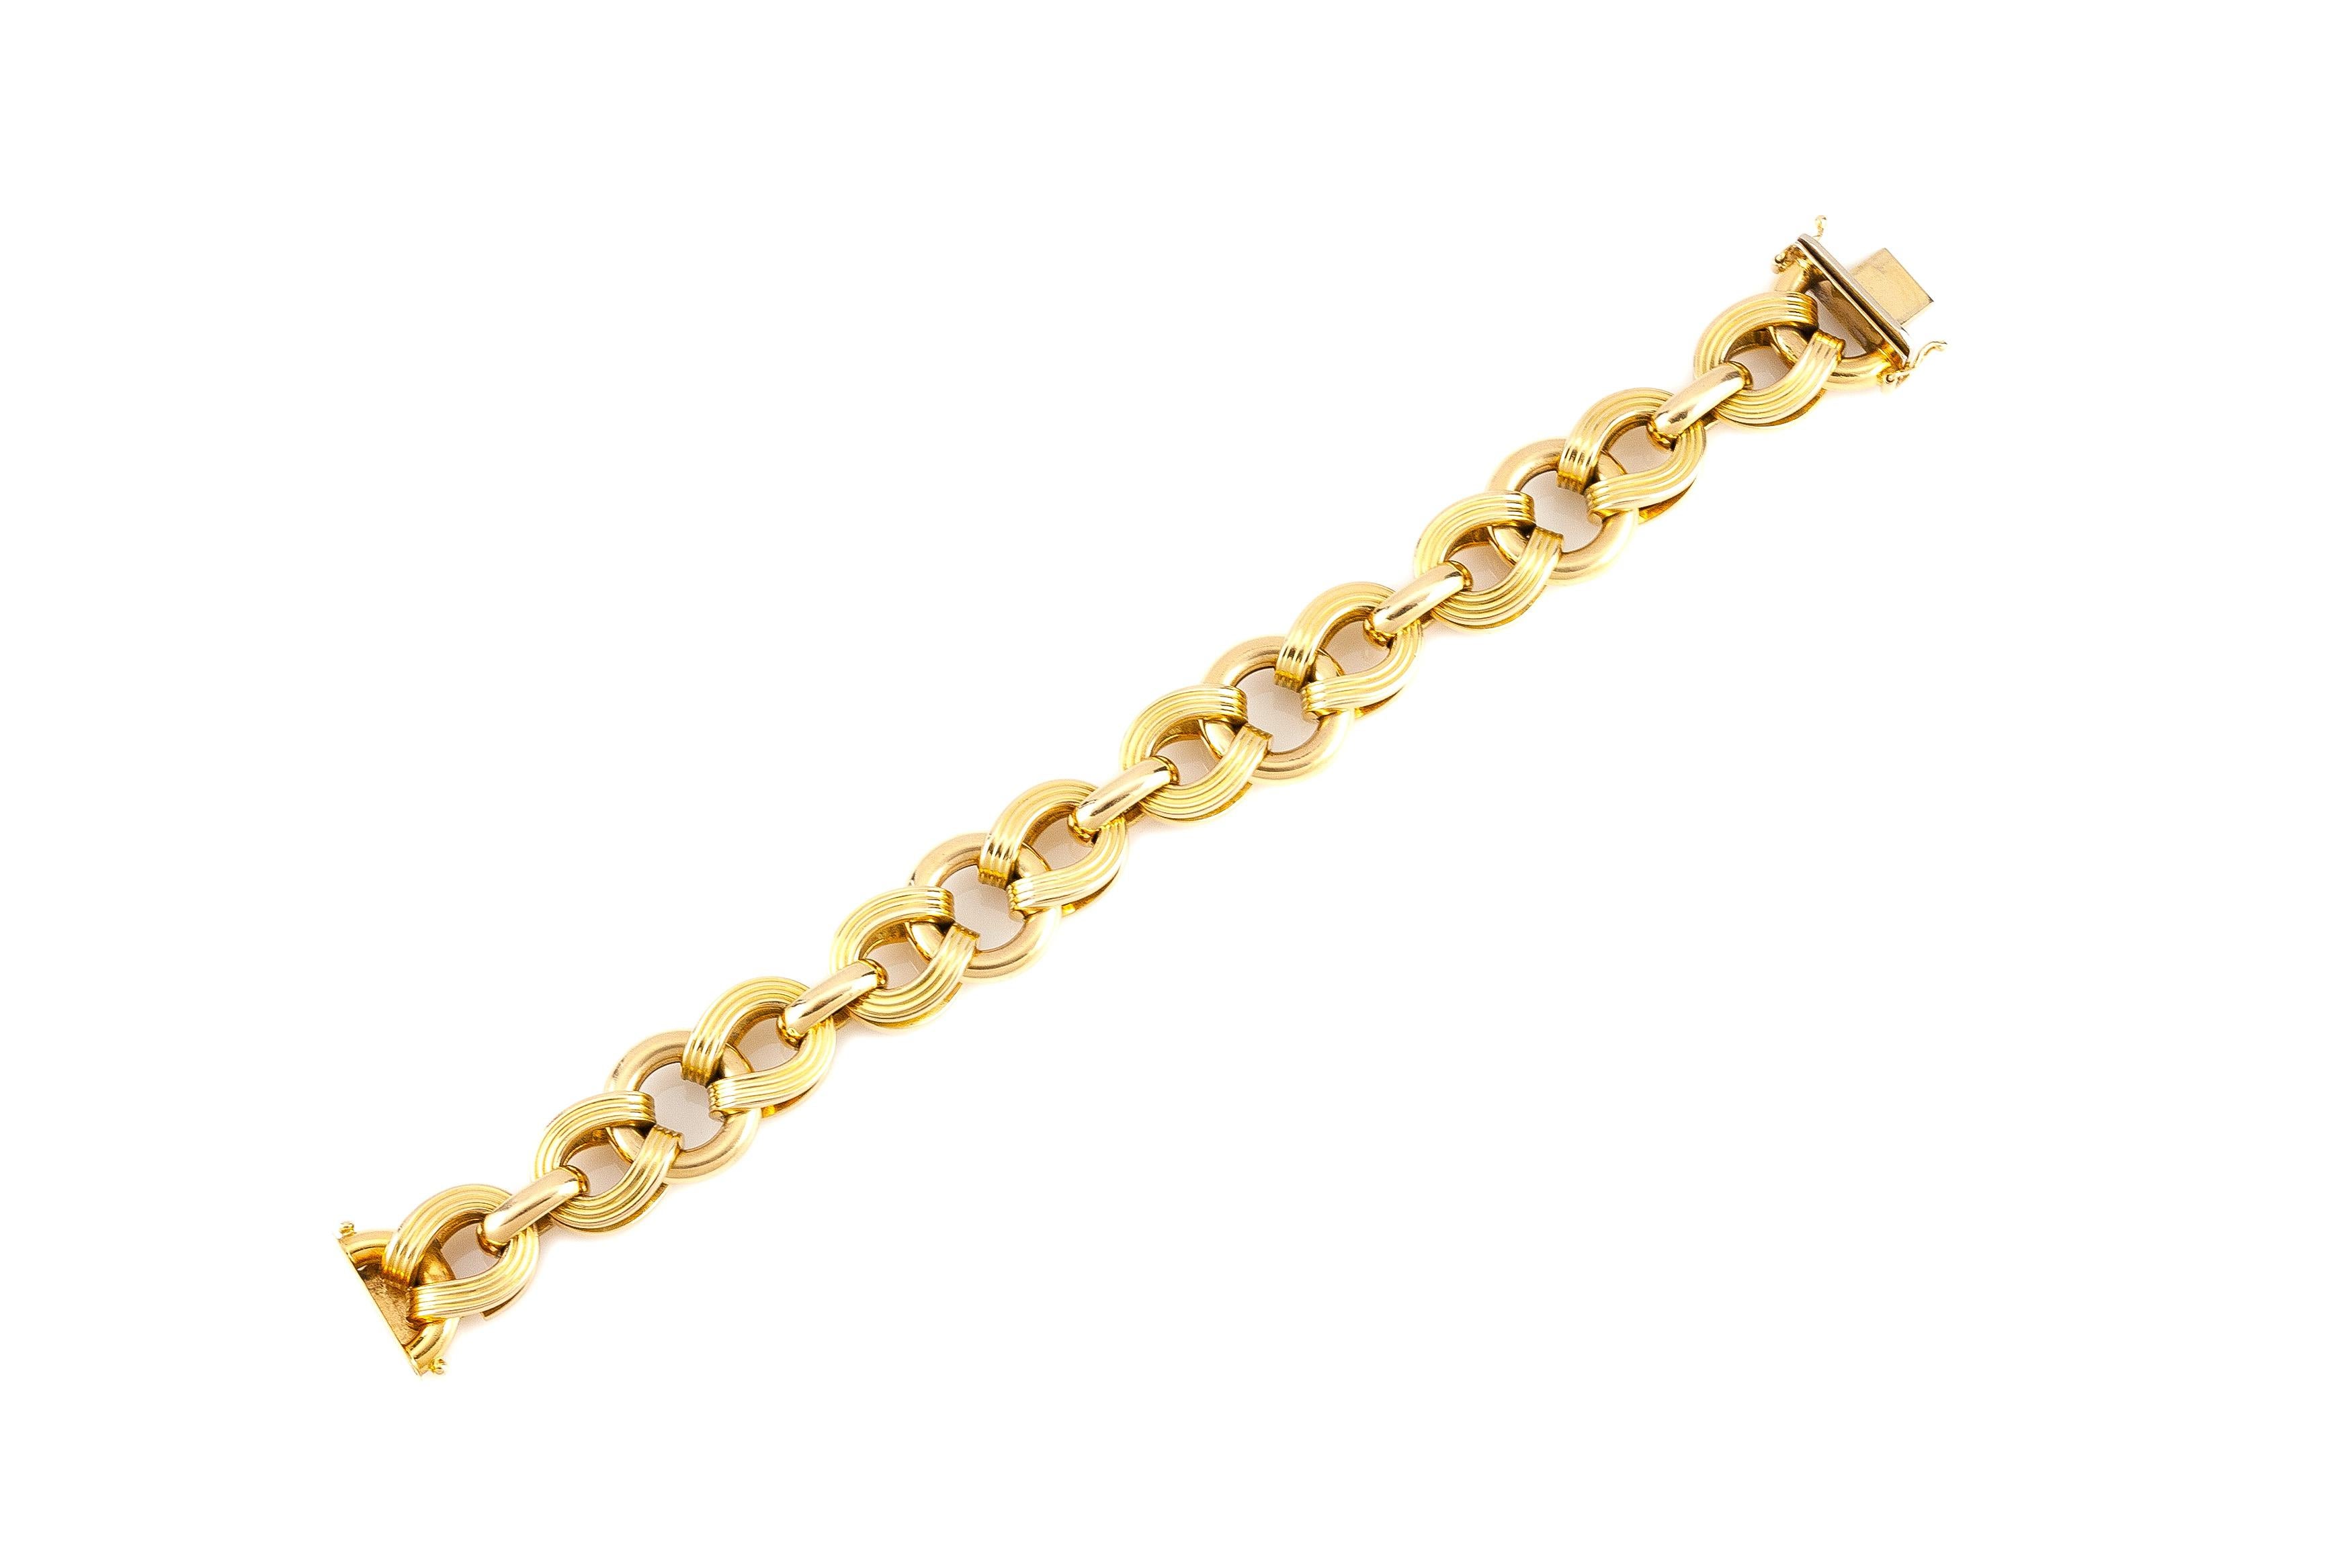 Das Armband ist fein in 14k Gelbgold gefertigt und wiegt ungefähr insgesamt 24,40 Dwt.
